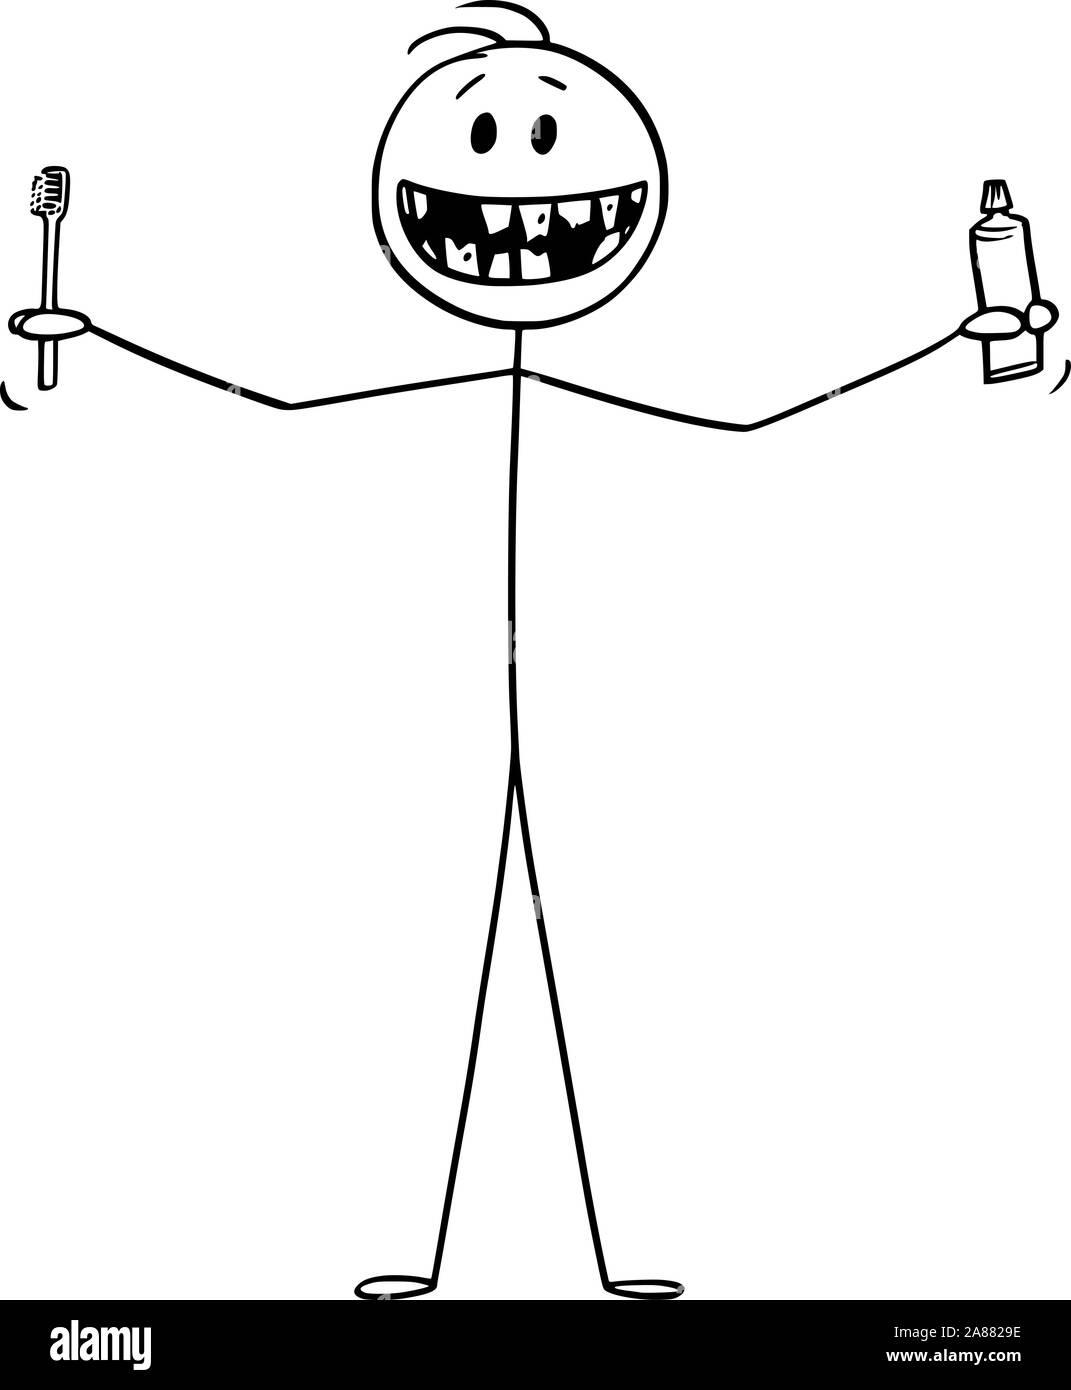 Vector cartoon stick figure dessin illustration conceptuelle de smiling man montrant ses mauvaises dents, et tenant une brosse à dents ou une brosse à dents et dentifrice dentifrice ou dans les mains. Illustration de Vecteur